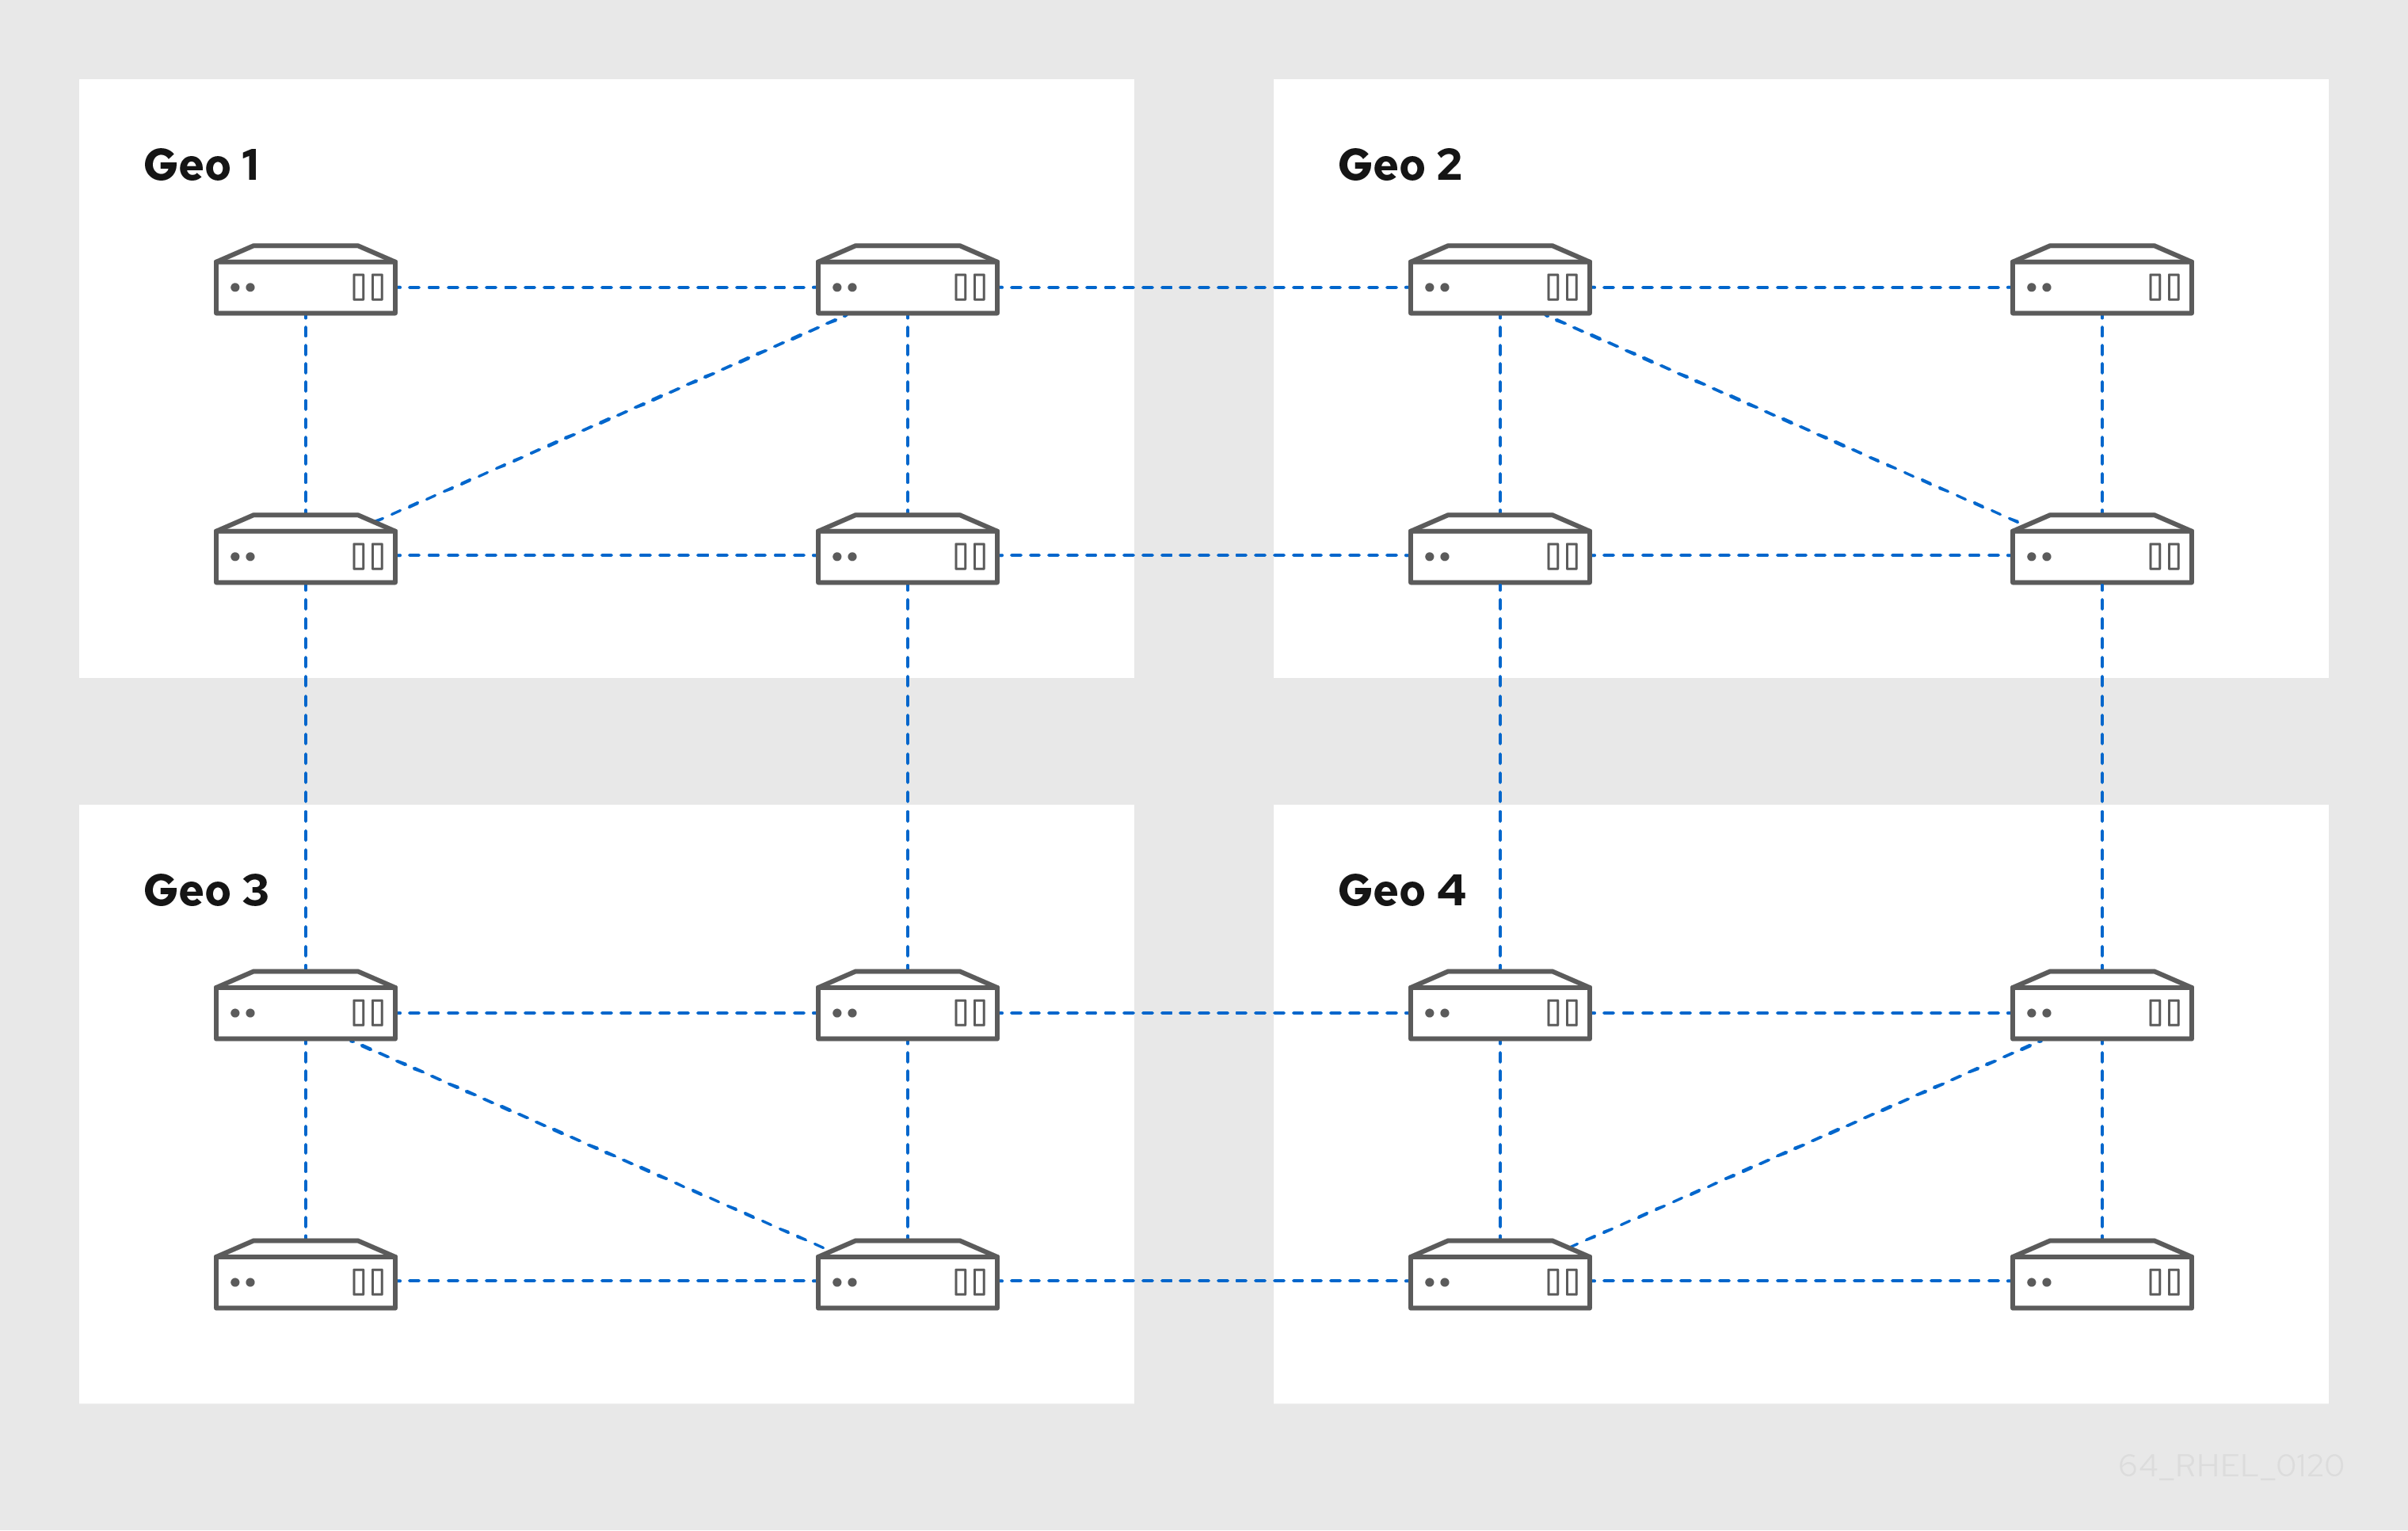 데이터 센터 4개를 보여주는 다이어그램 - 1~4. 각 데이터 센터에는 복제 계약에 따라 서로 연결된 네 개의 서버가 있습니다. 또한 Geo 1에서 두 서버에 있는 두 서버를 연결하는 복제 계약도 있습니다. 이 패턴은 Geo 4에 연결된 Geo 3 서버에 있는 두 개의 서버로 계속 연결되어 있습니다. 이렇게 하면 각 데이터 센터가 연결되므로 각 서버는 다른 지오에서 최대 3홉 홉을 떨어져 있습니다.